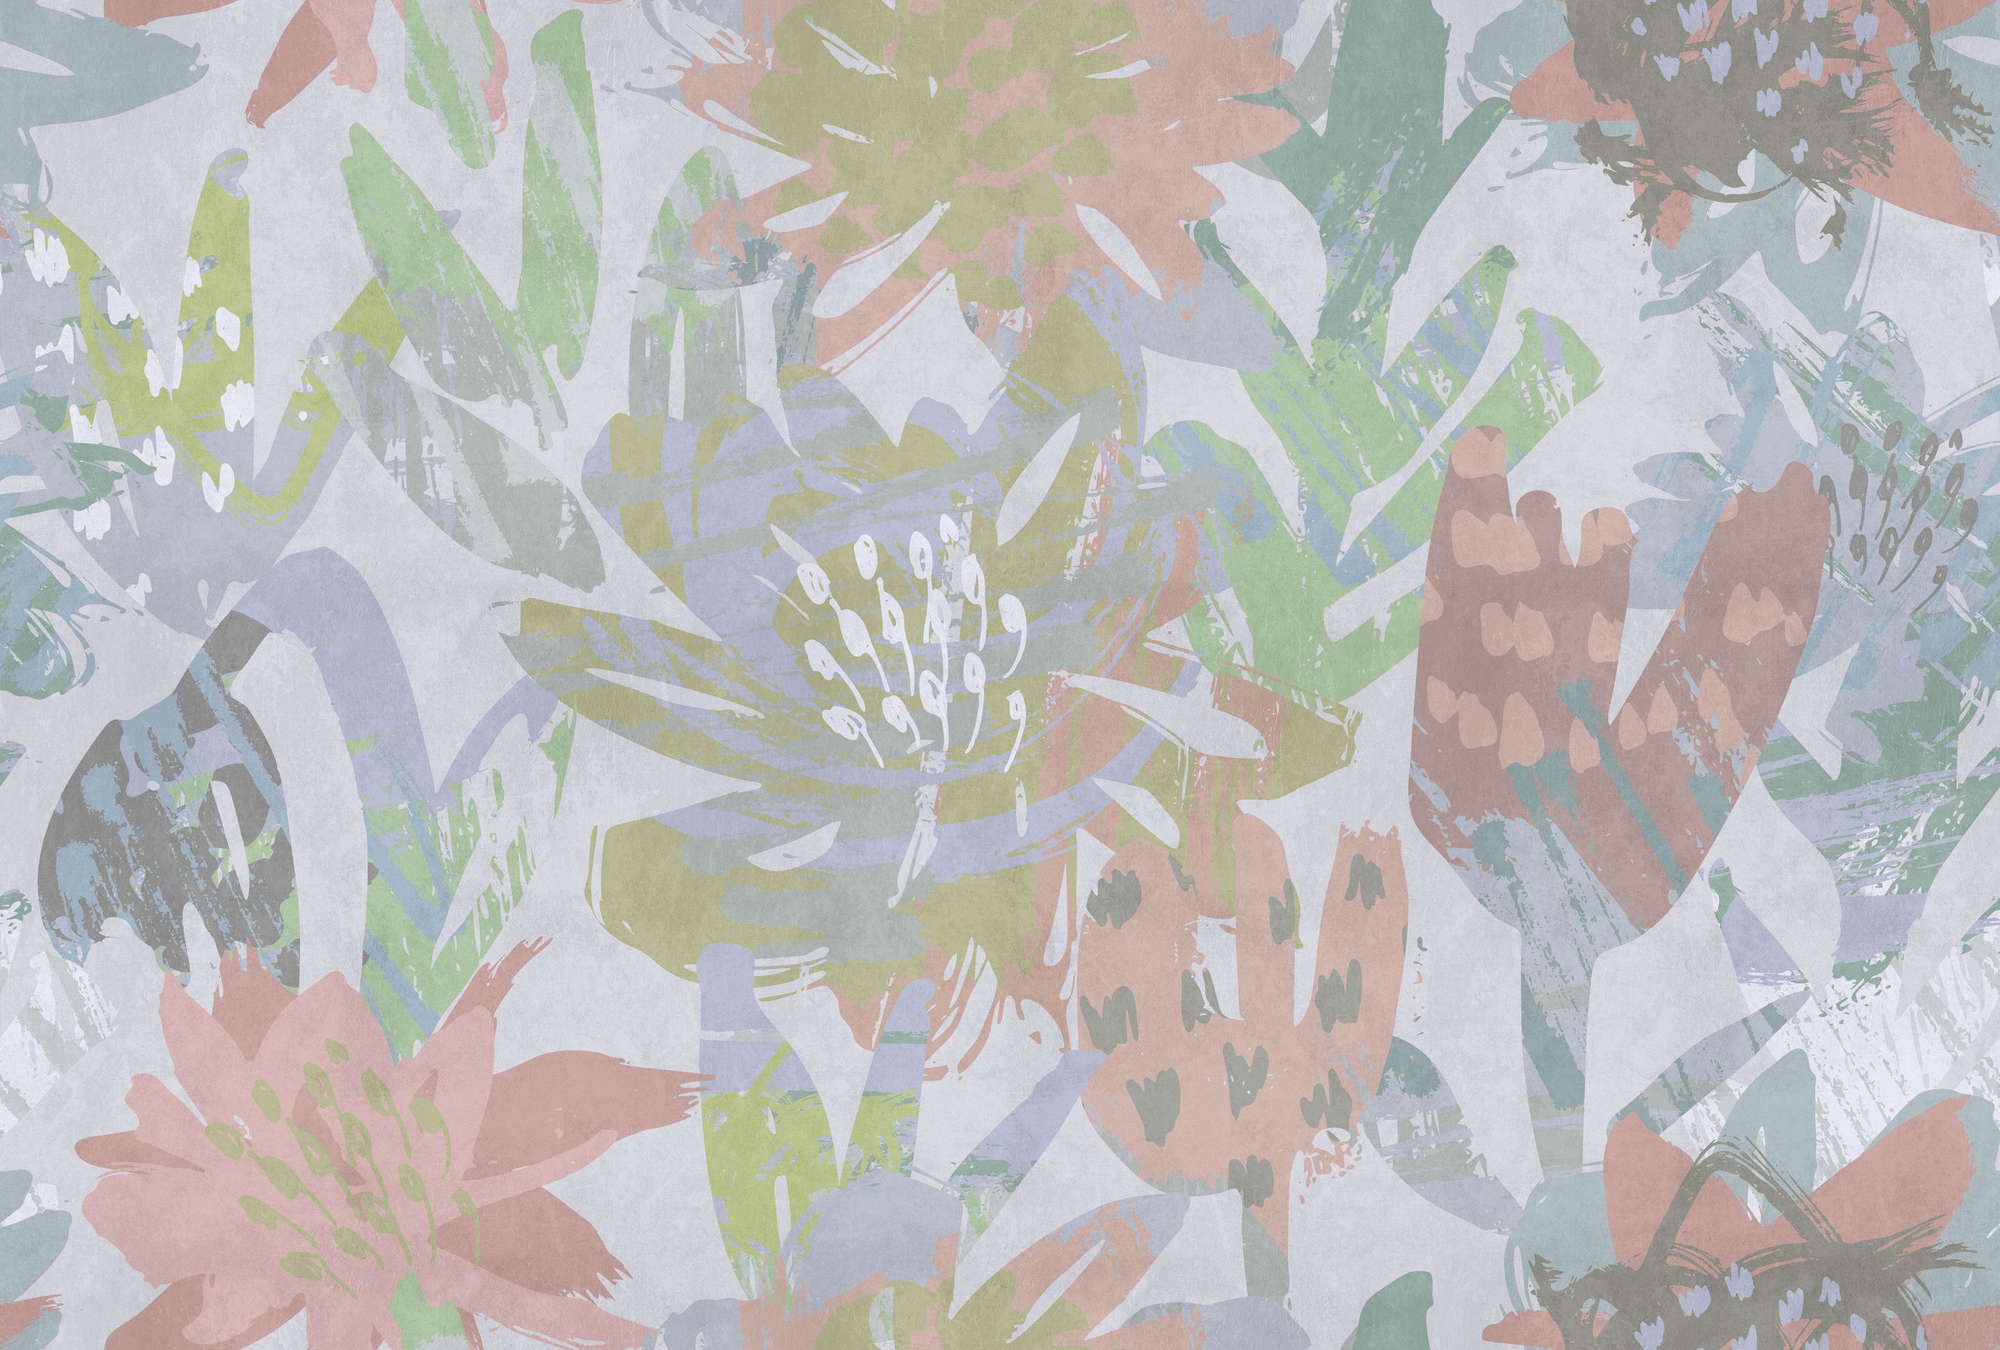             Fotomural »sophia« - Motivo floral colorido sobre textura de yeso de hormigón - Material sin tejer liso, ligeramente nacarado
        